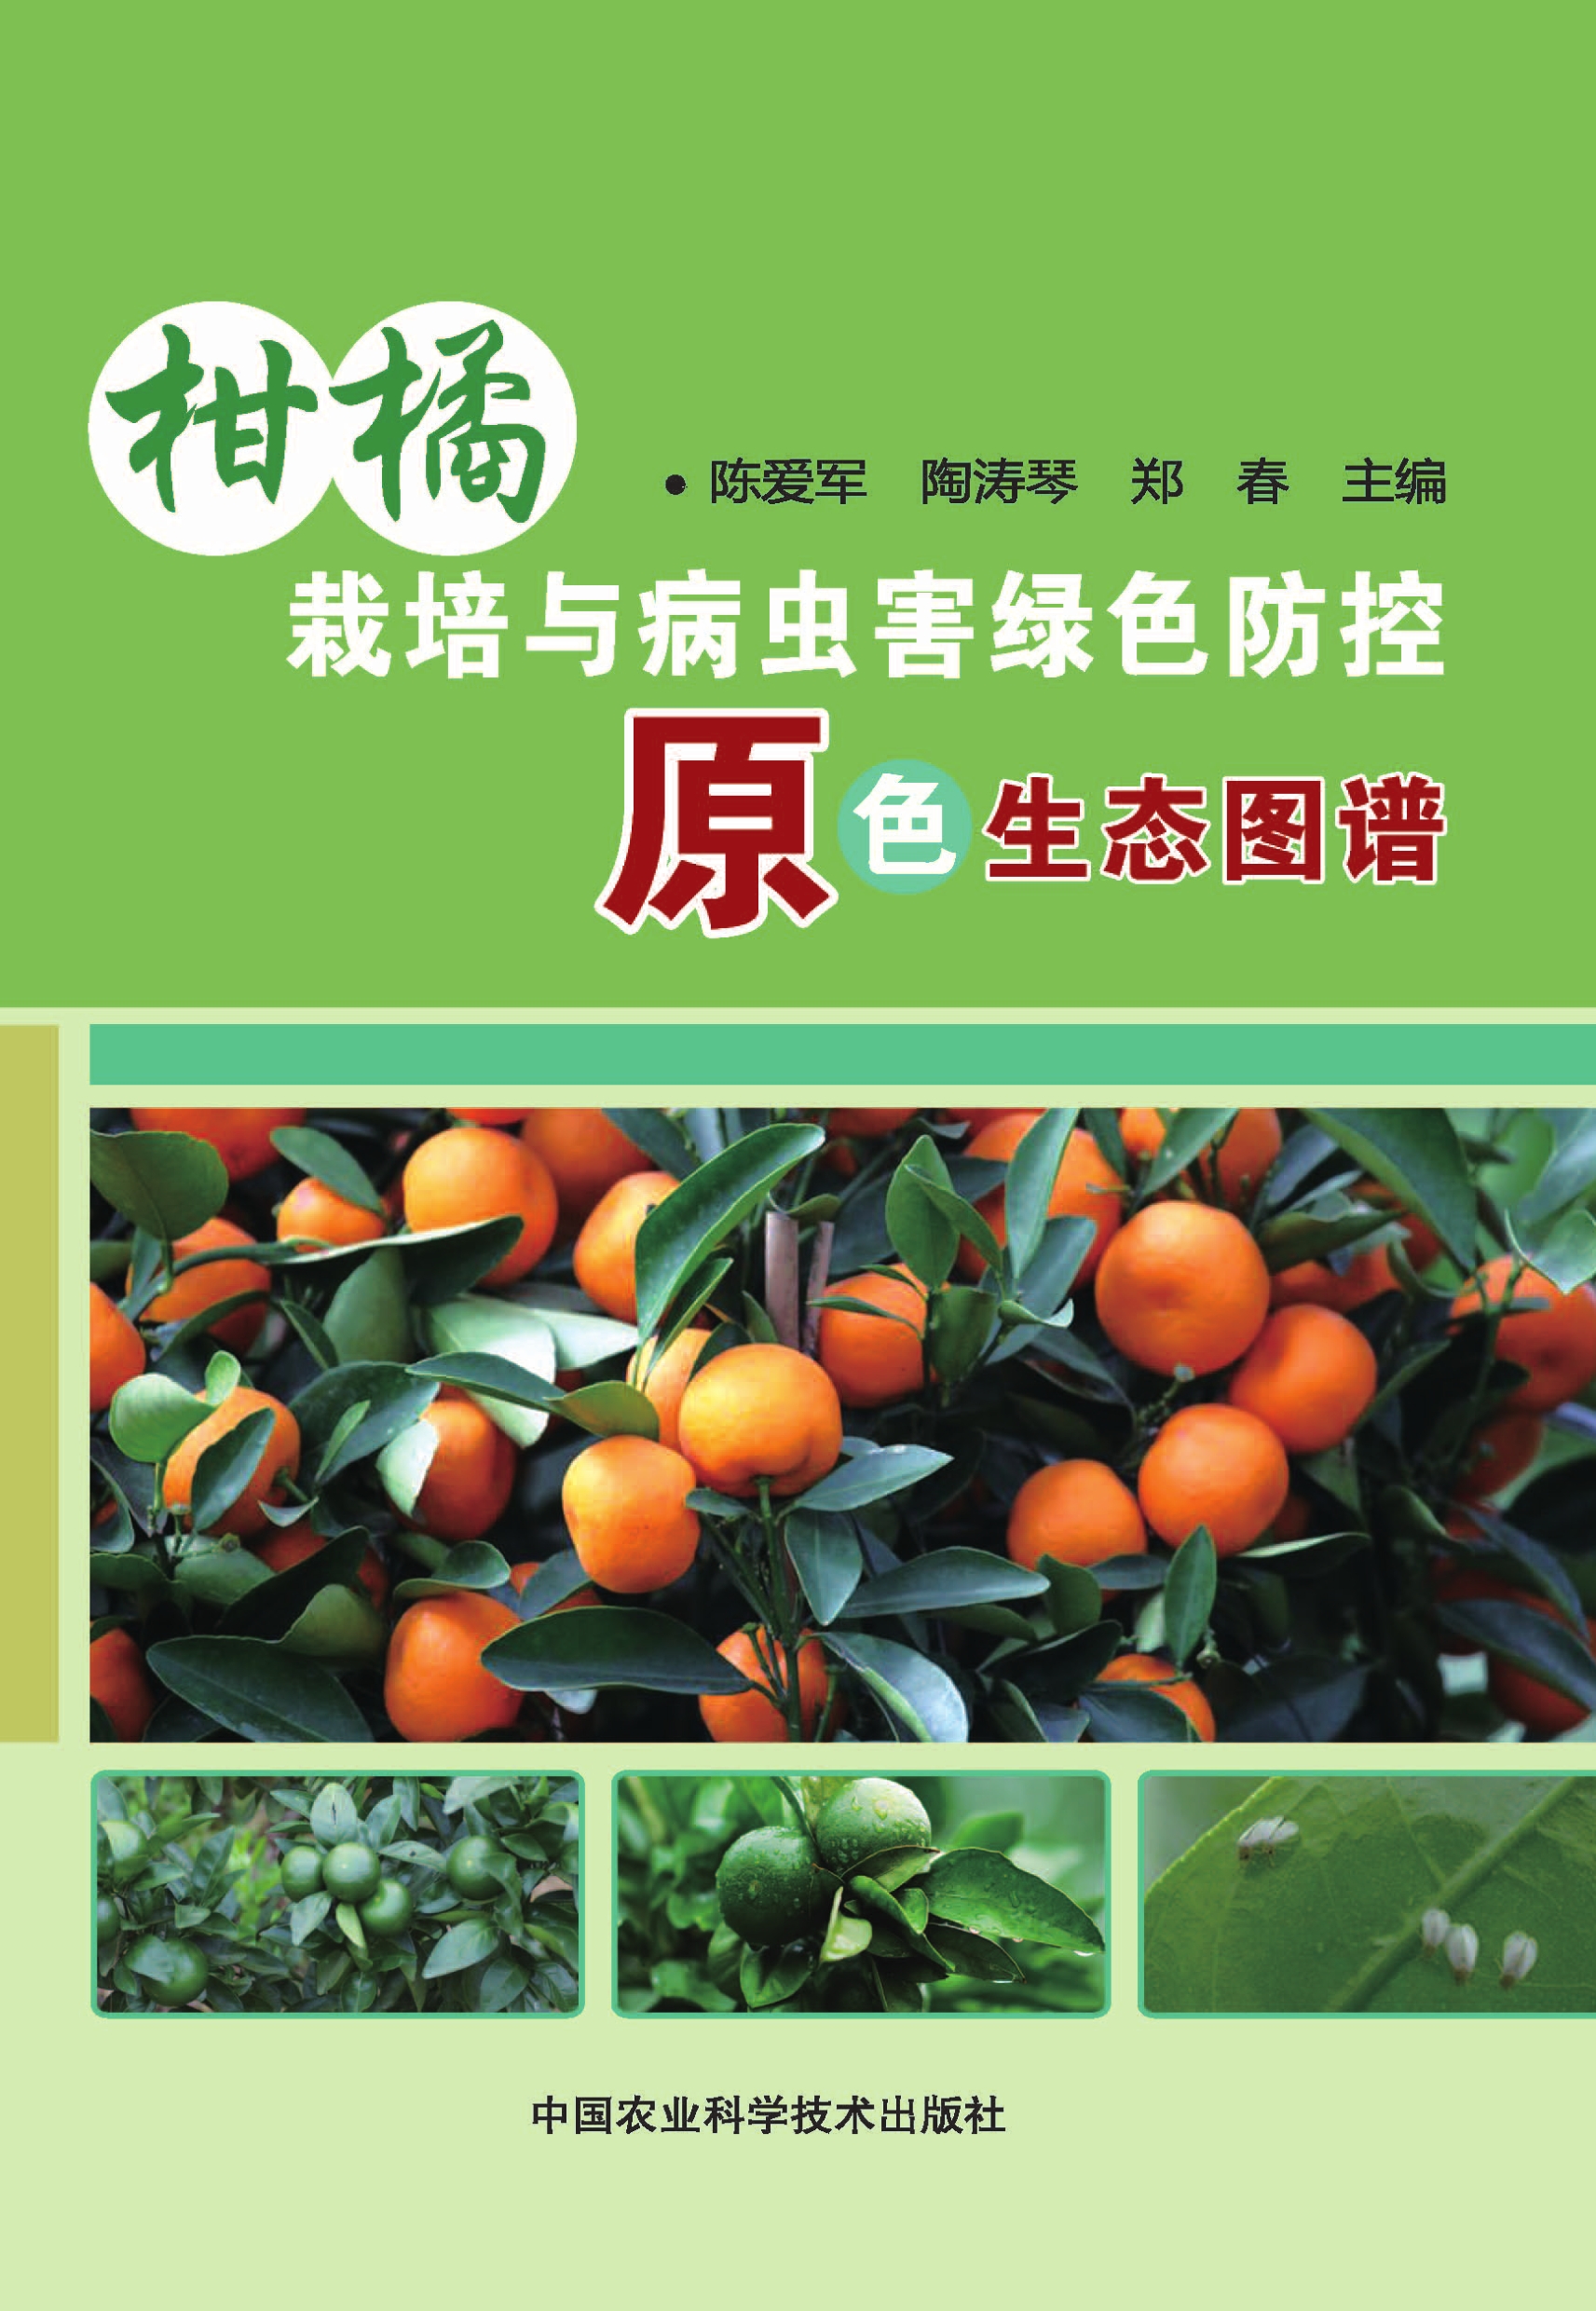 柑橘栽培与病虫害绿色防控原色生态图谱